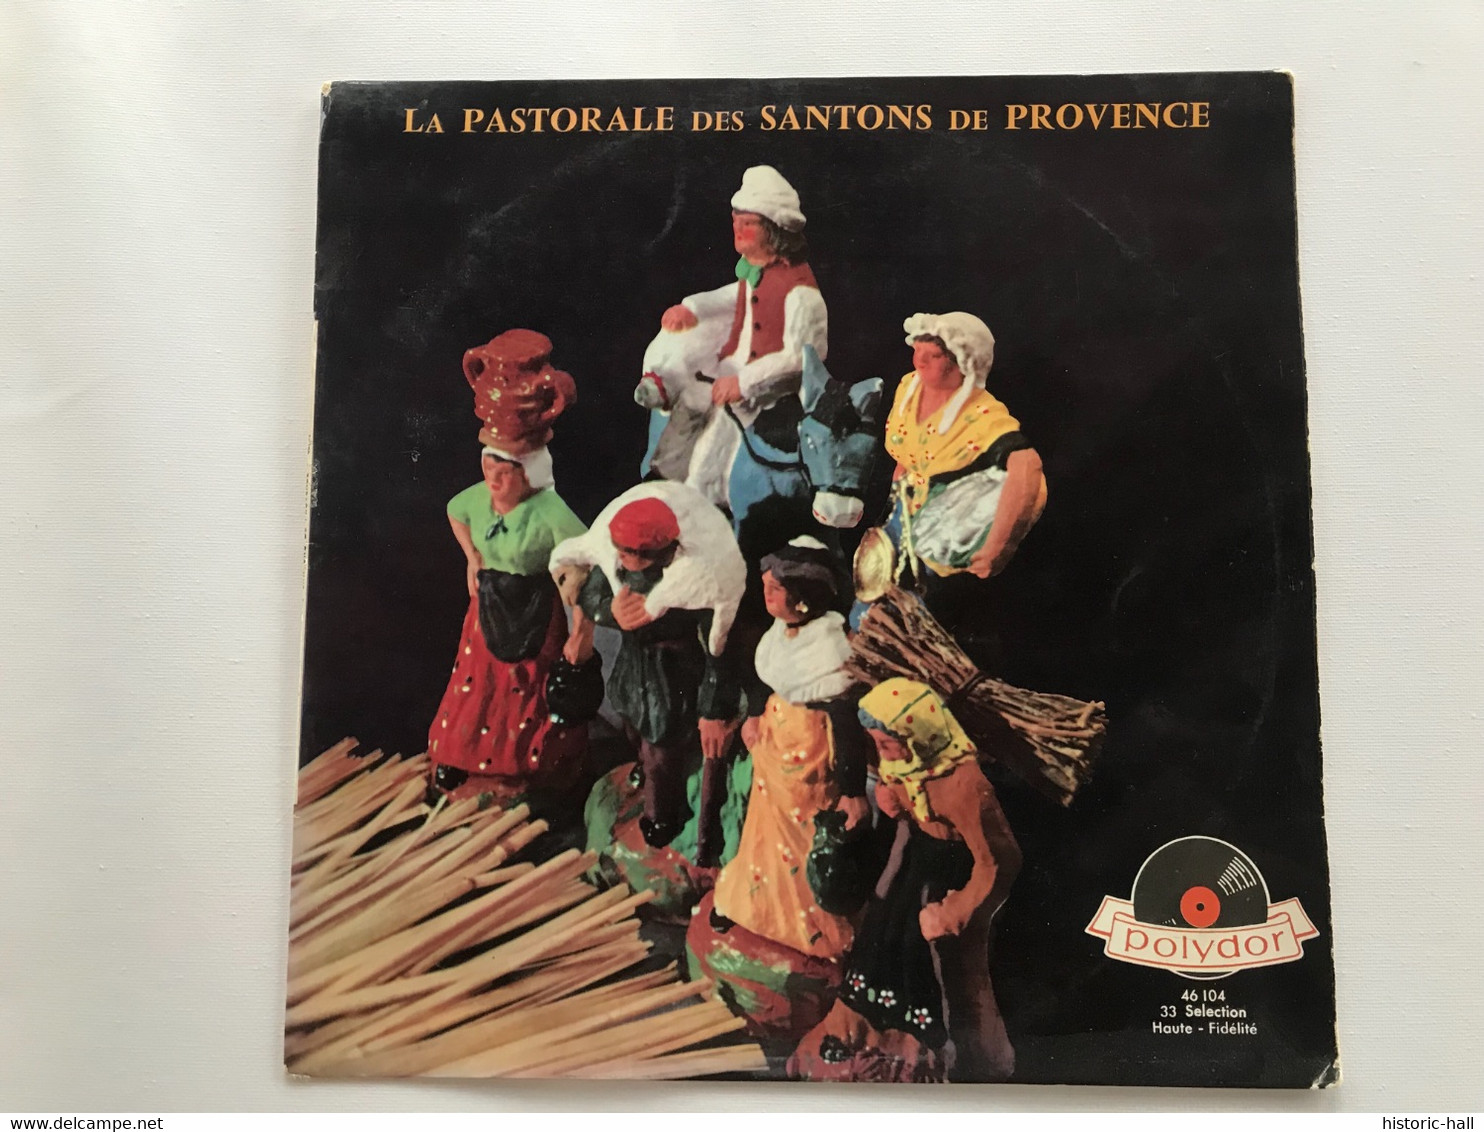 LA PASTORALE DES SANTONS DE PROVENCE - LP - Christmas Carols